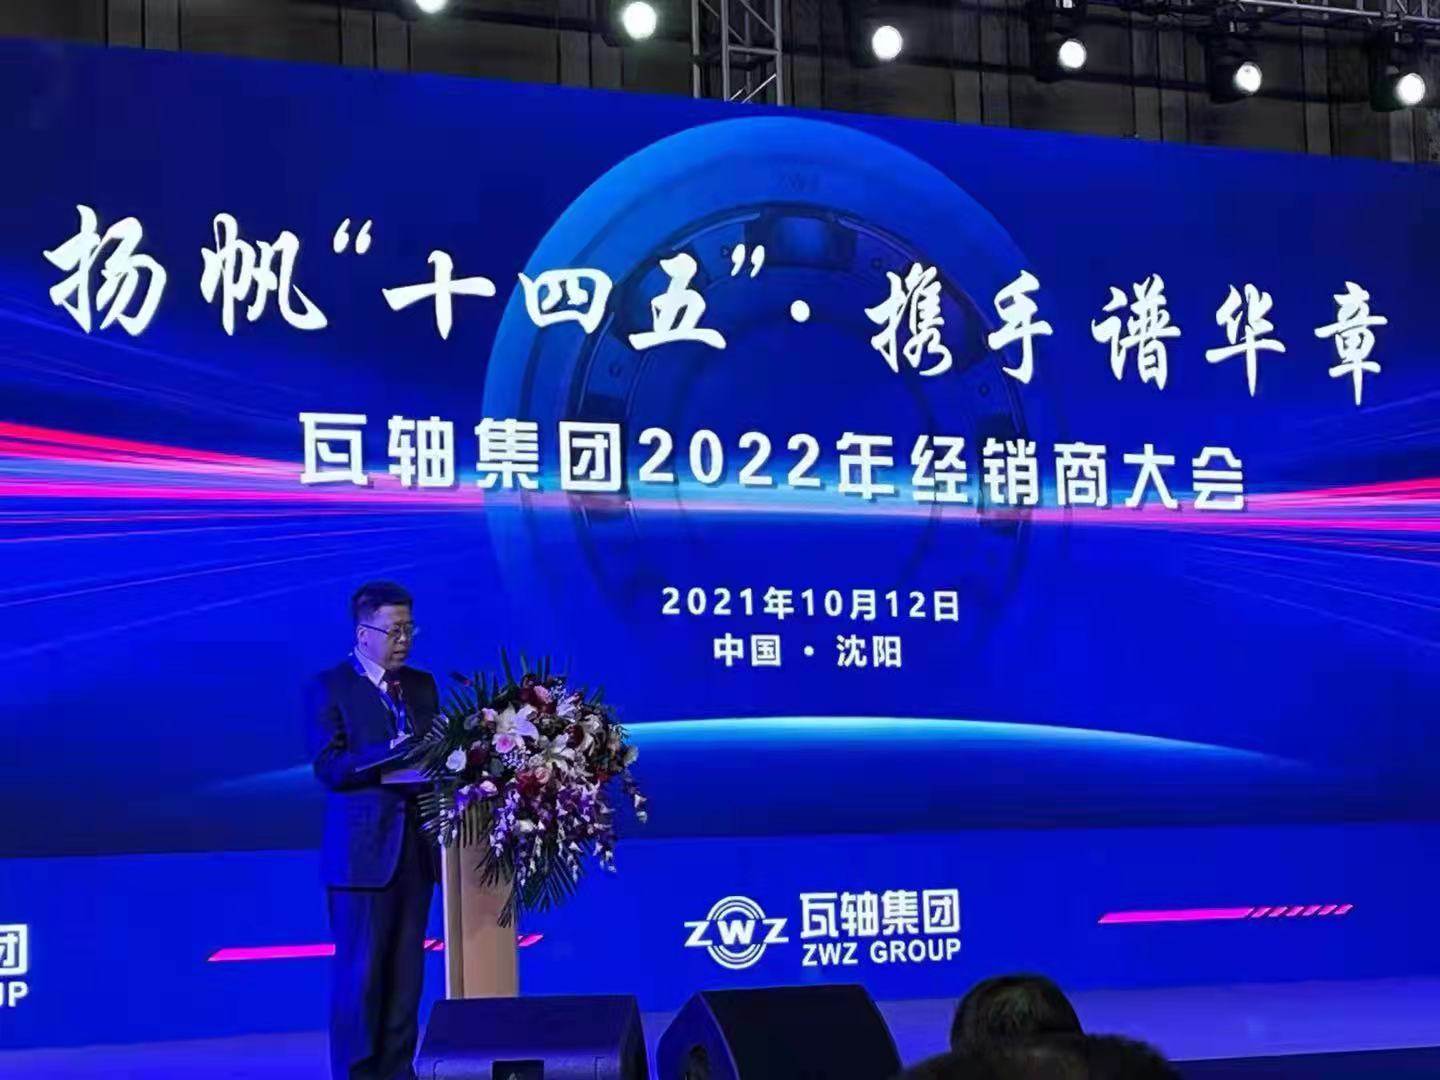 杭州万马轴承有限公司参加瓦轴集团2022年经销商大会